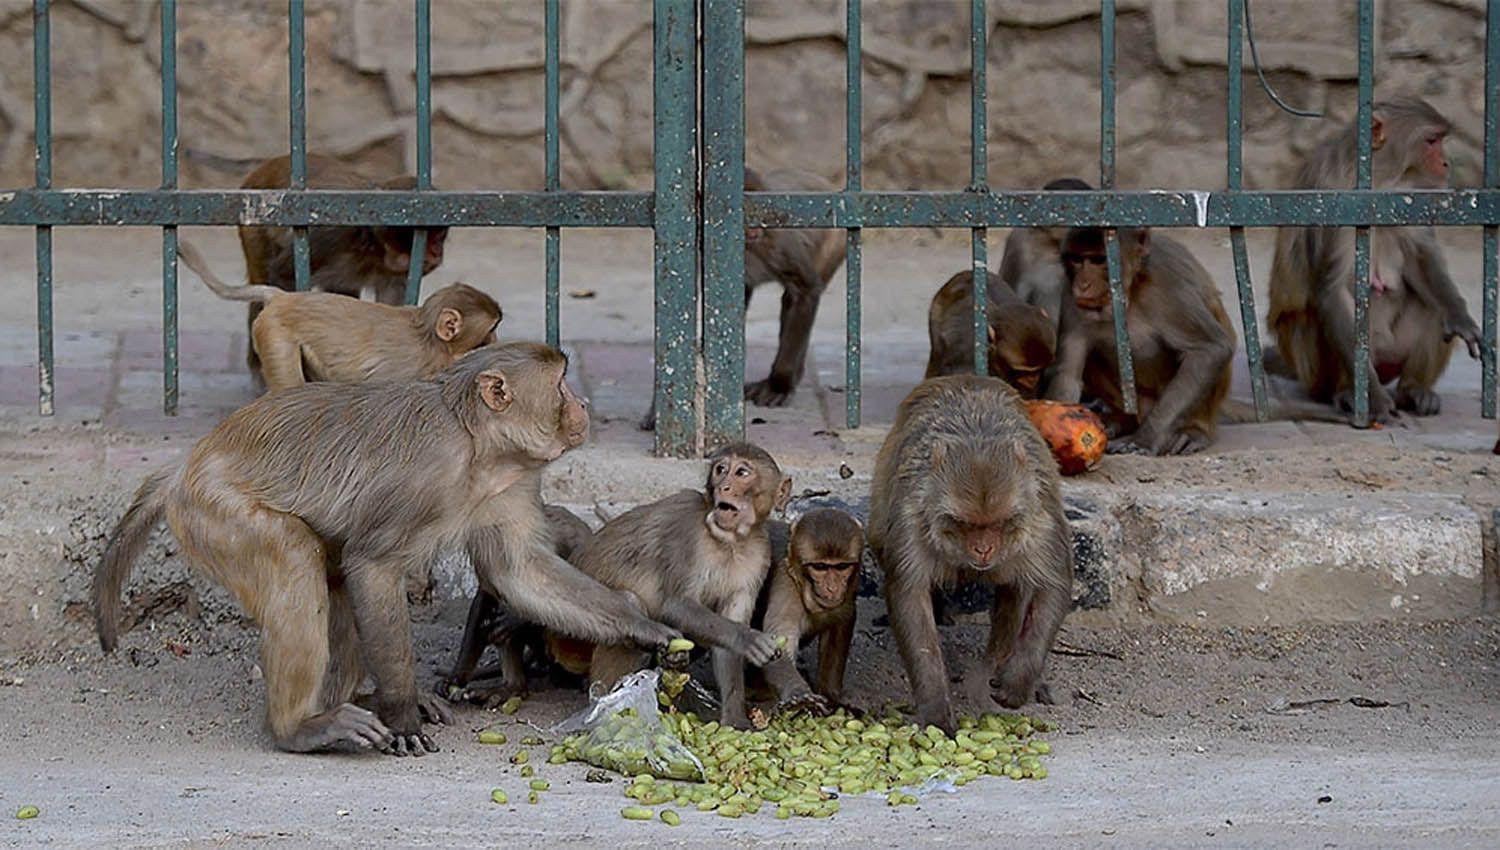 Monos roban muestras de pacientes ingresados por Covid-19 en un hospital